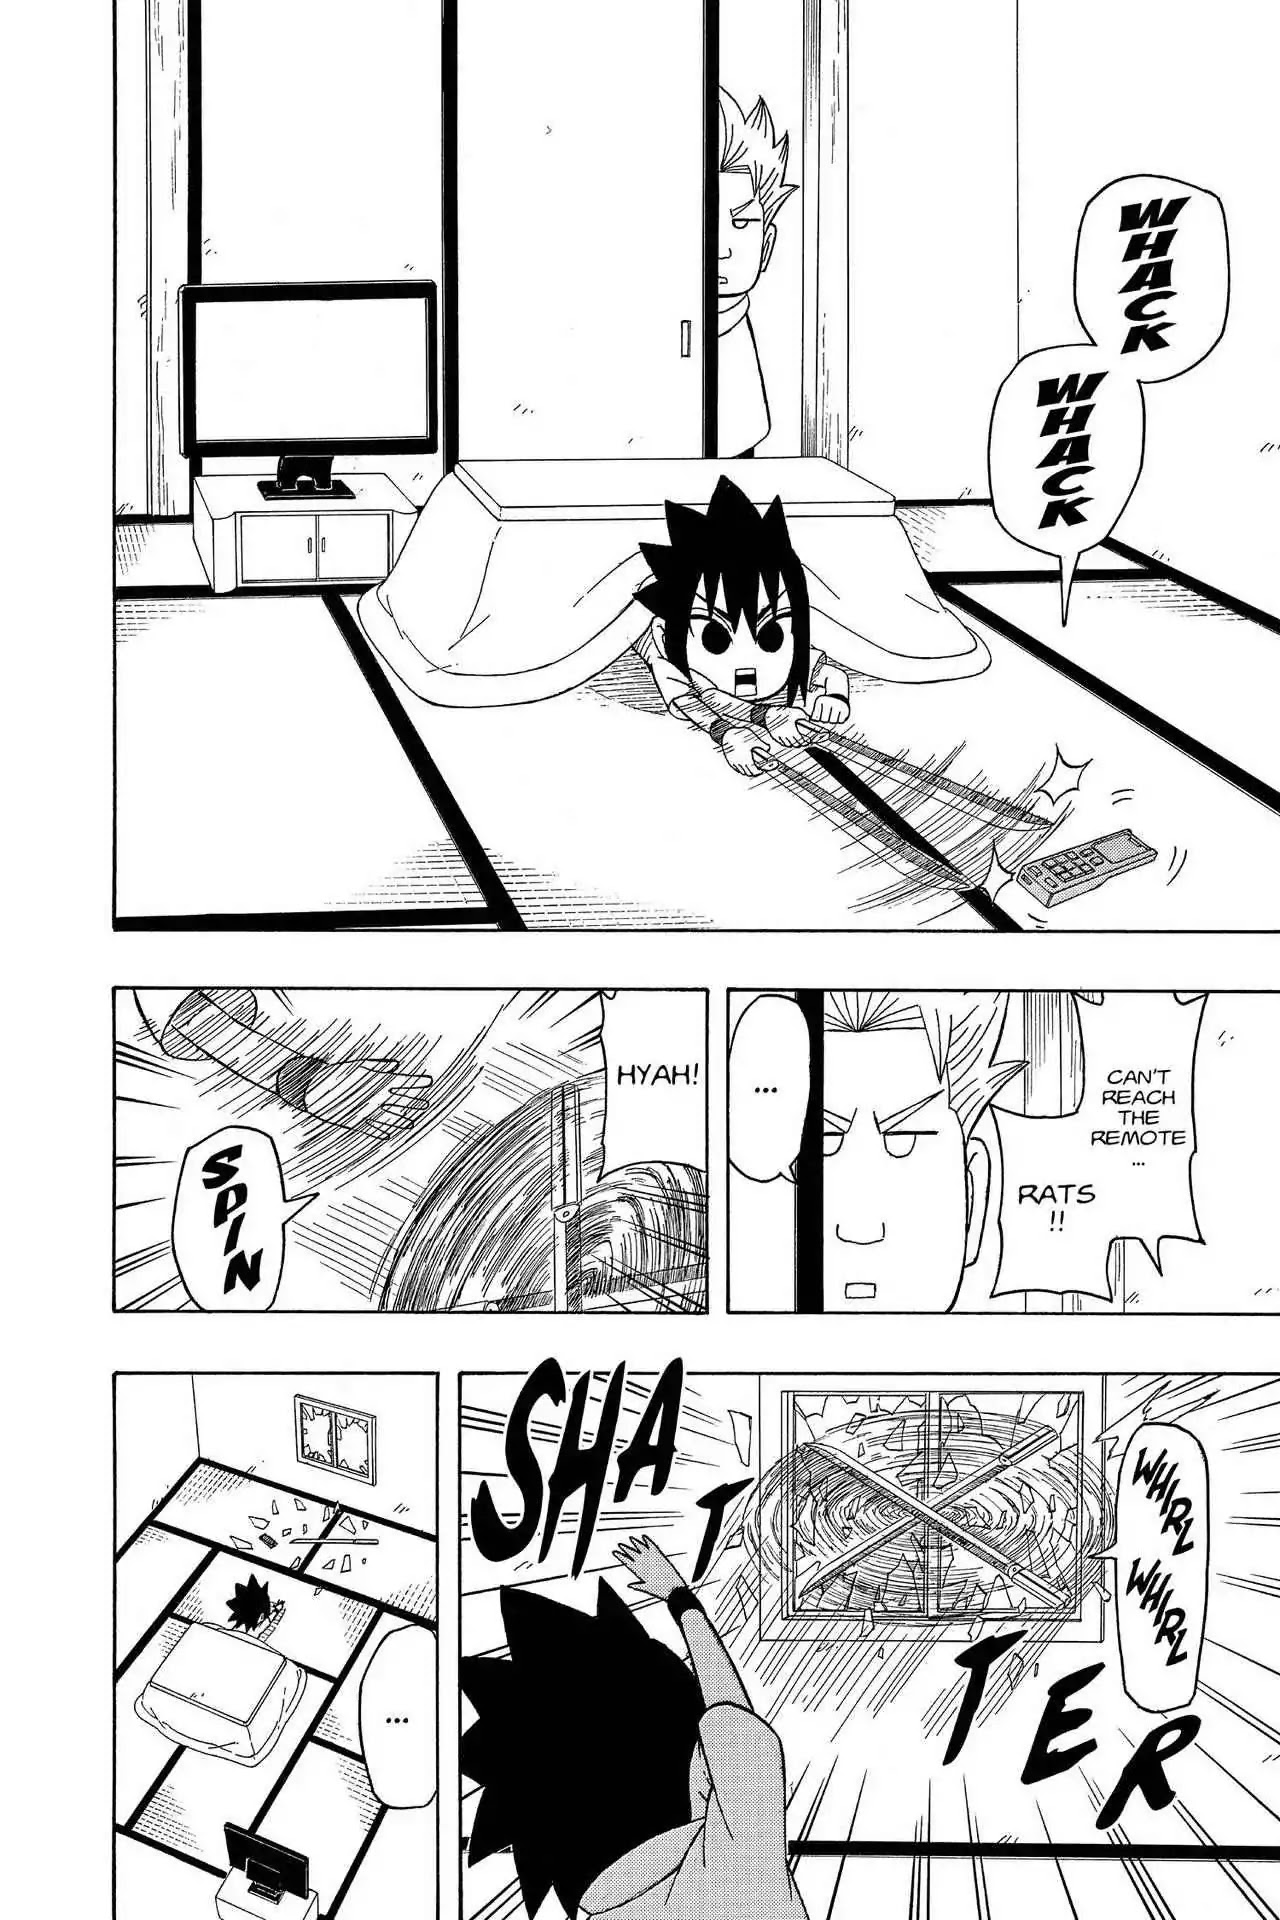 Naruto: Chibi Sasuke's Sharingan Legend - Page 3